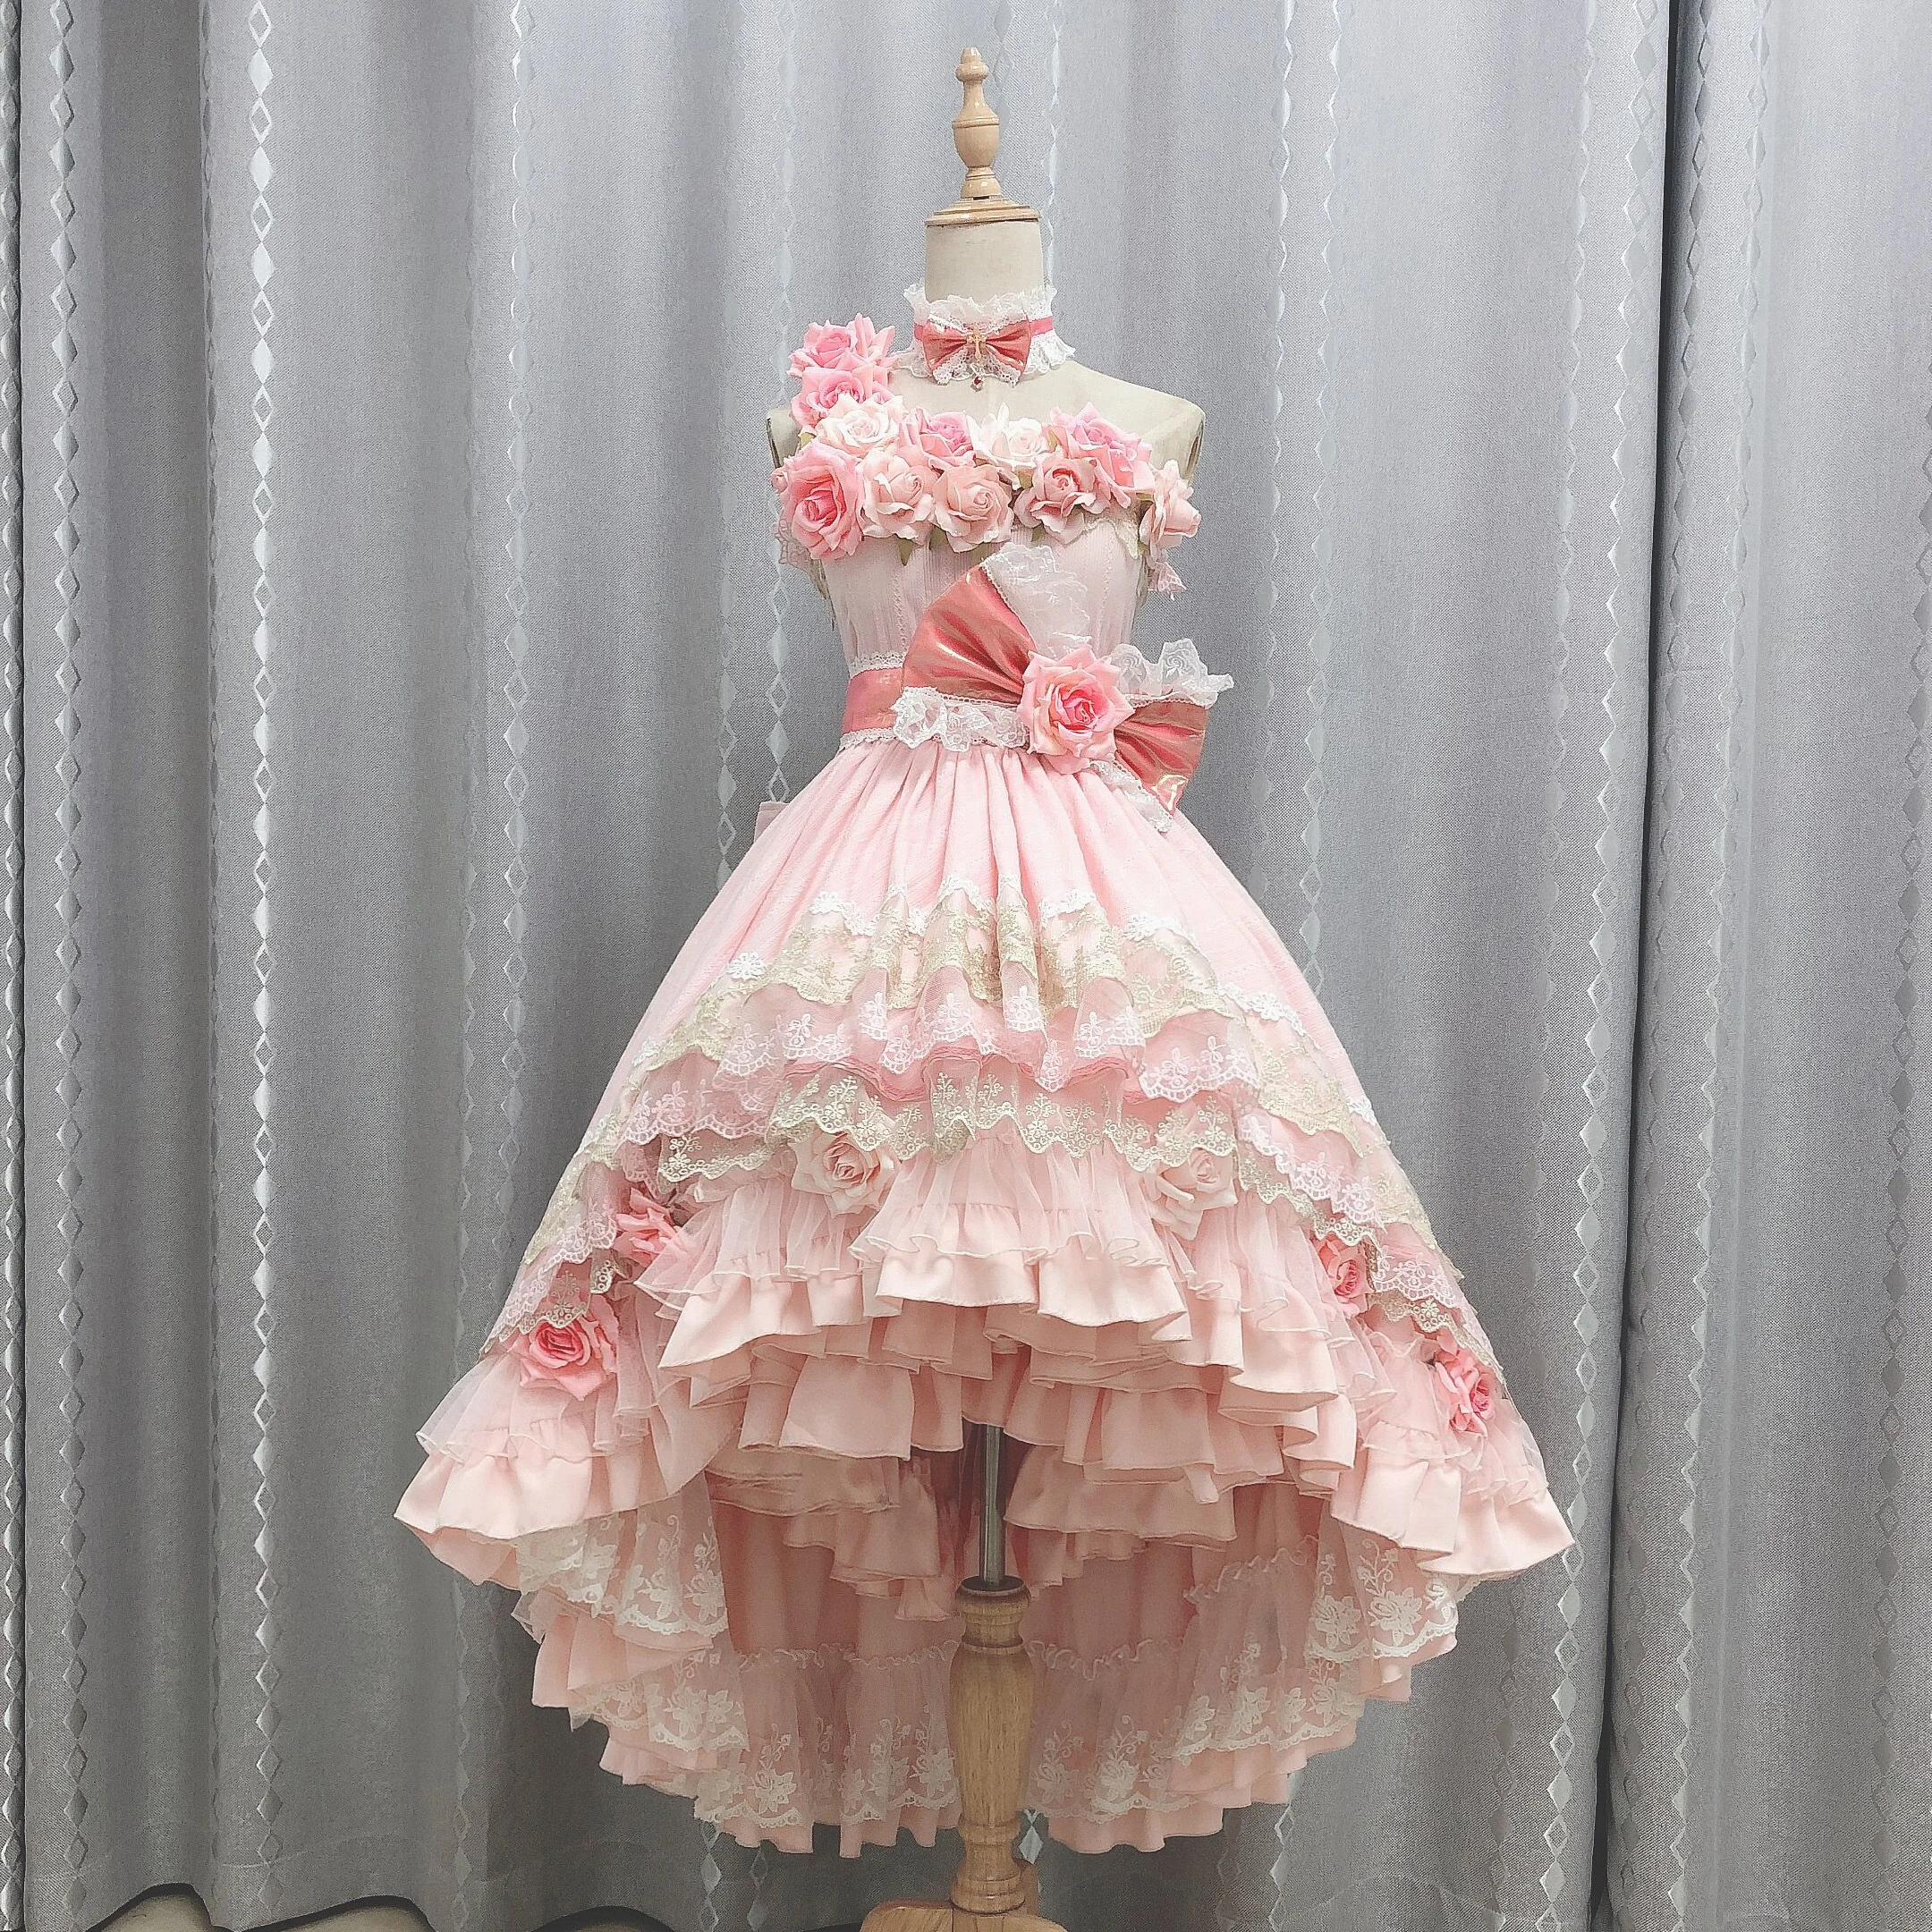 Amine che mi ha fatto una principessa Atanasia / Athy cosplay Costume bella Lolita abito taglie S-XXL 2021 nuovo su misura